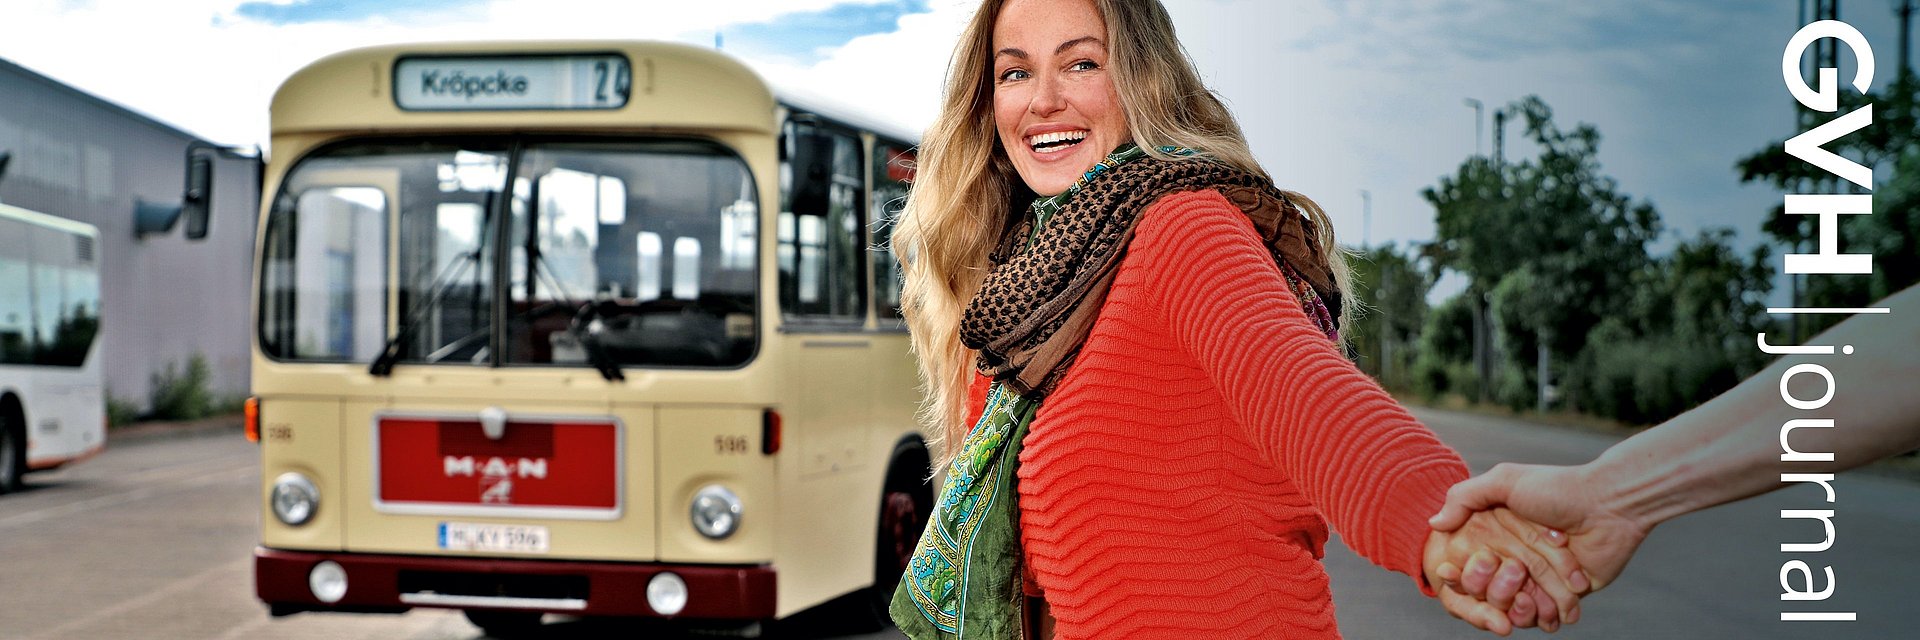 Titelbild des GVH journal 3.2020: Eine Frau zieht eine andere Person an der Hand zu einem historischen Bus.